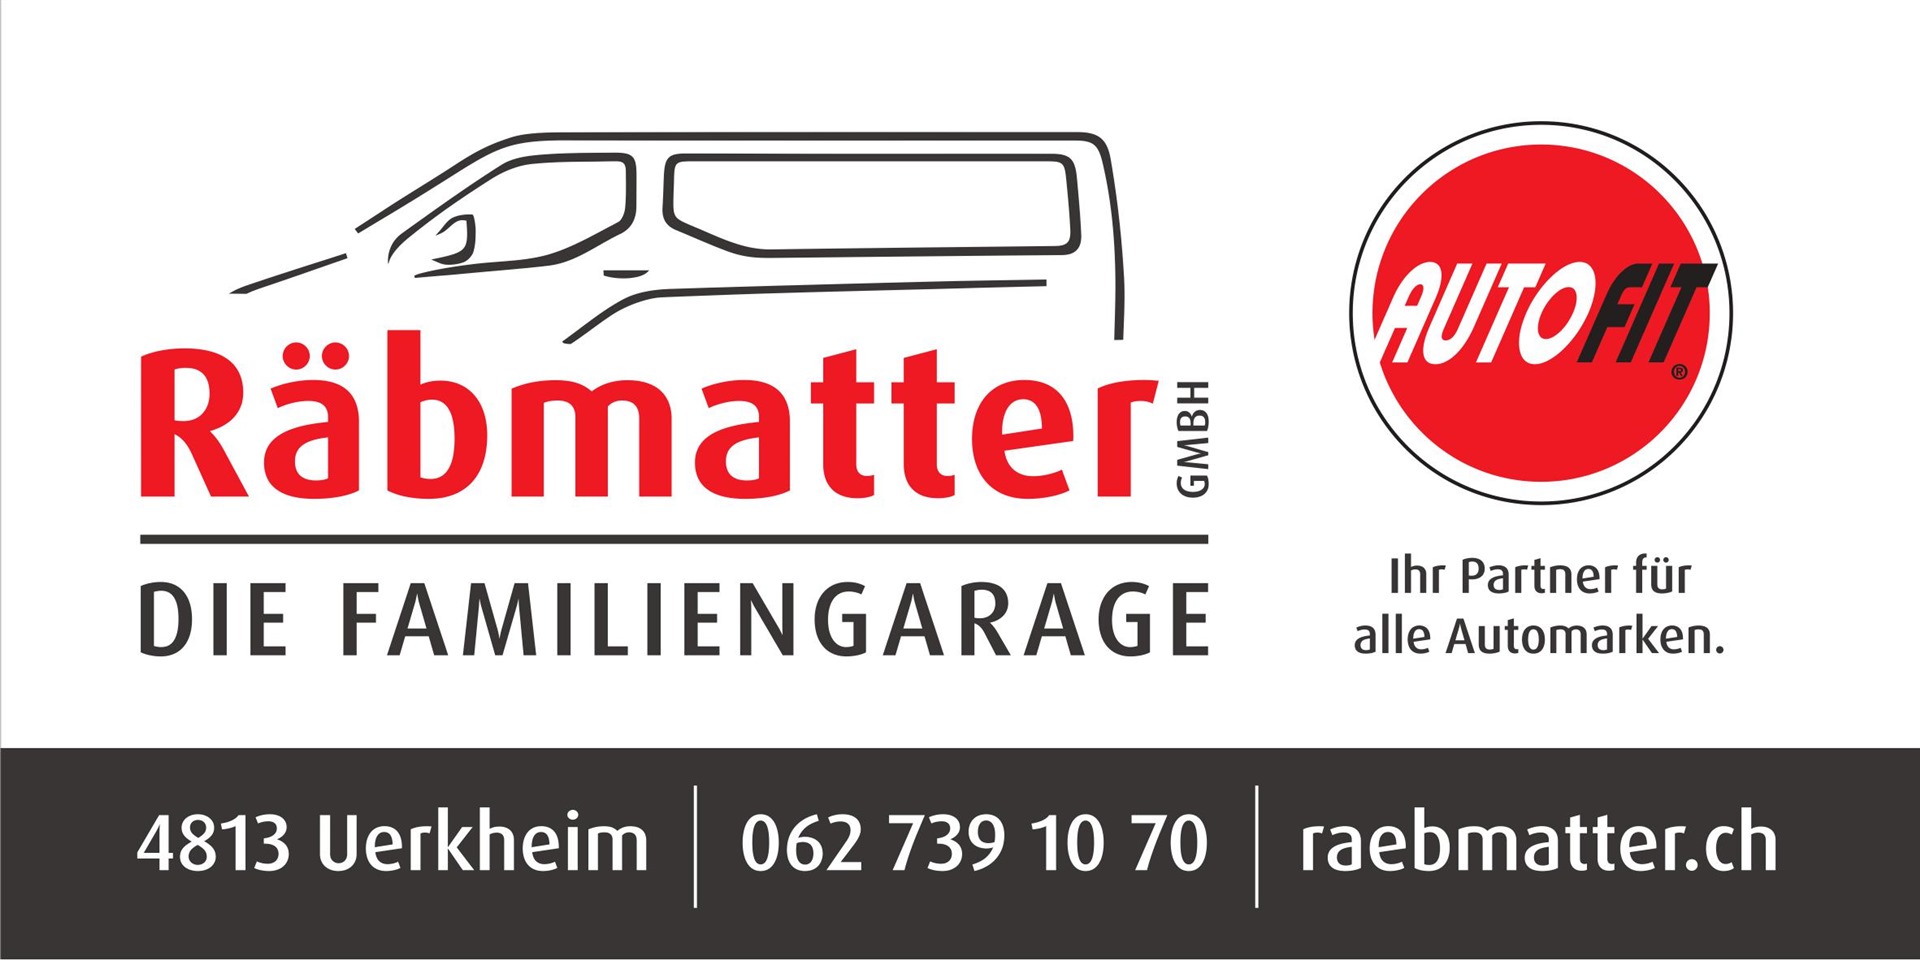 Garage Räbmatter GmbH Uerkheim